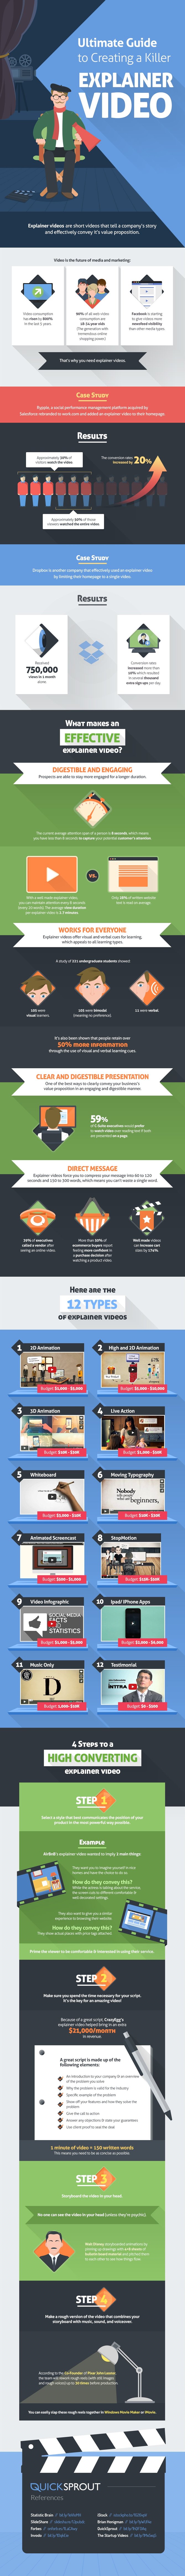 explainer-video-infographic.jpg